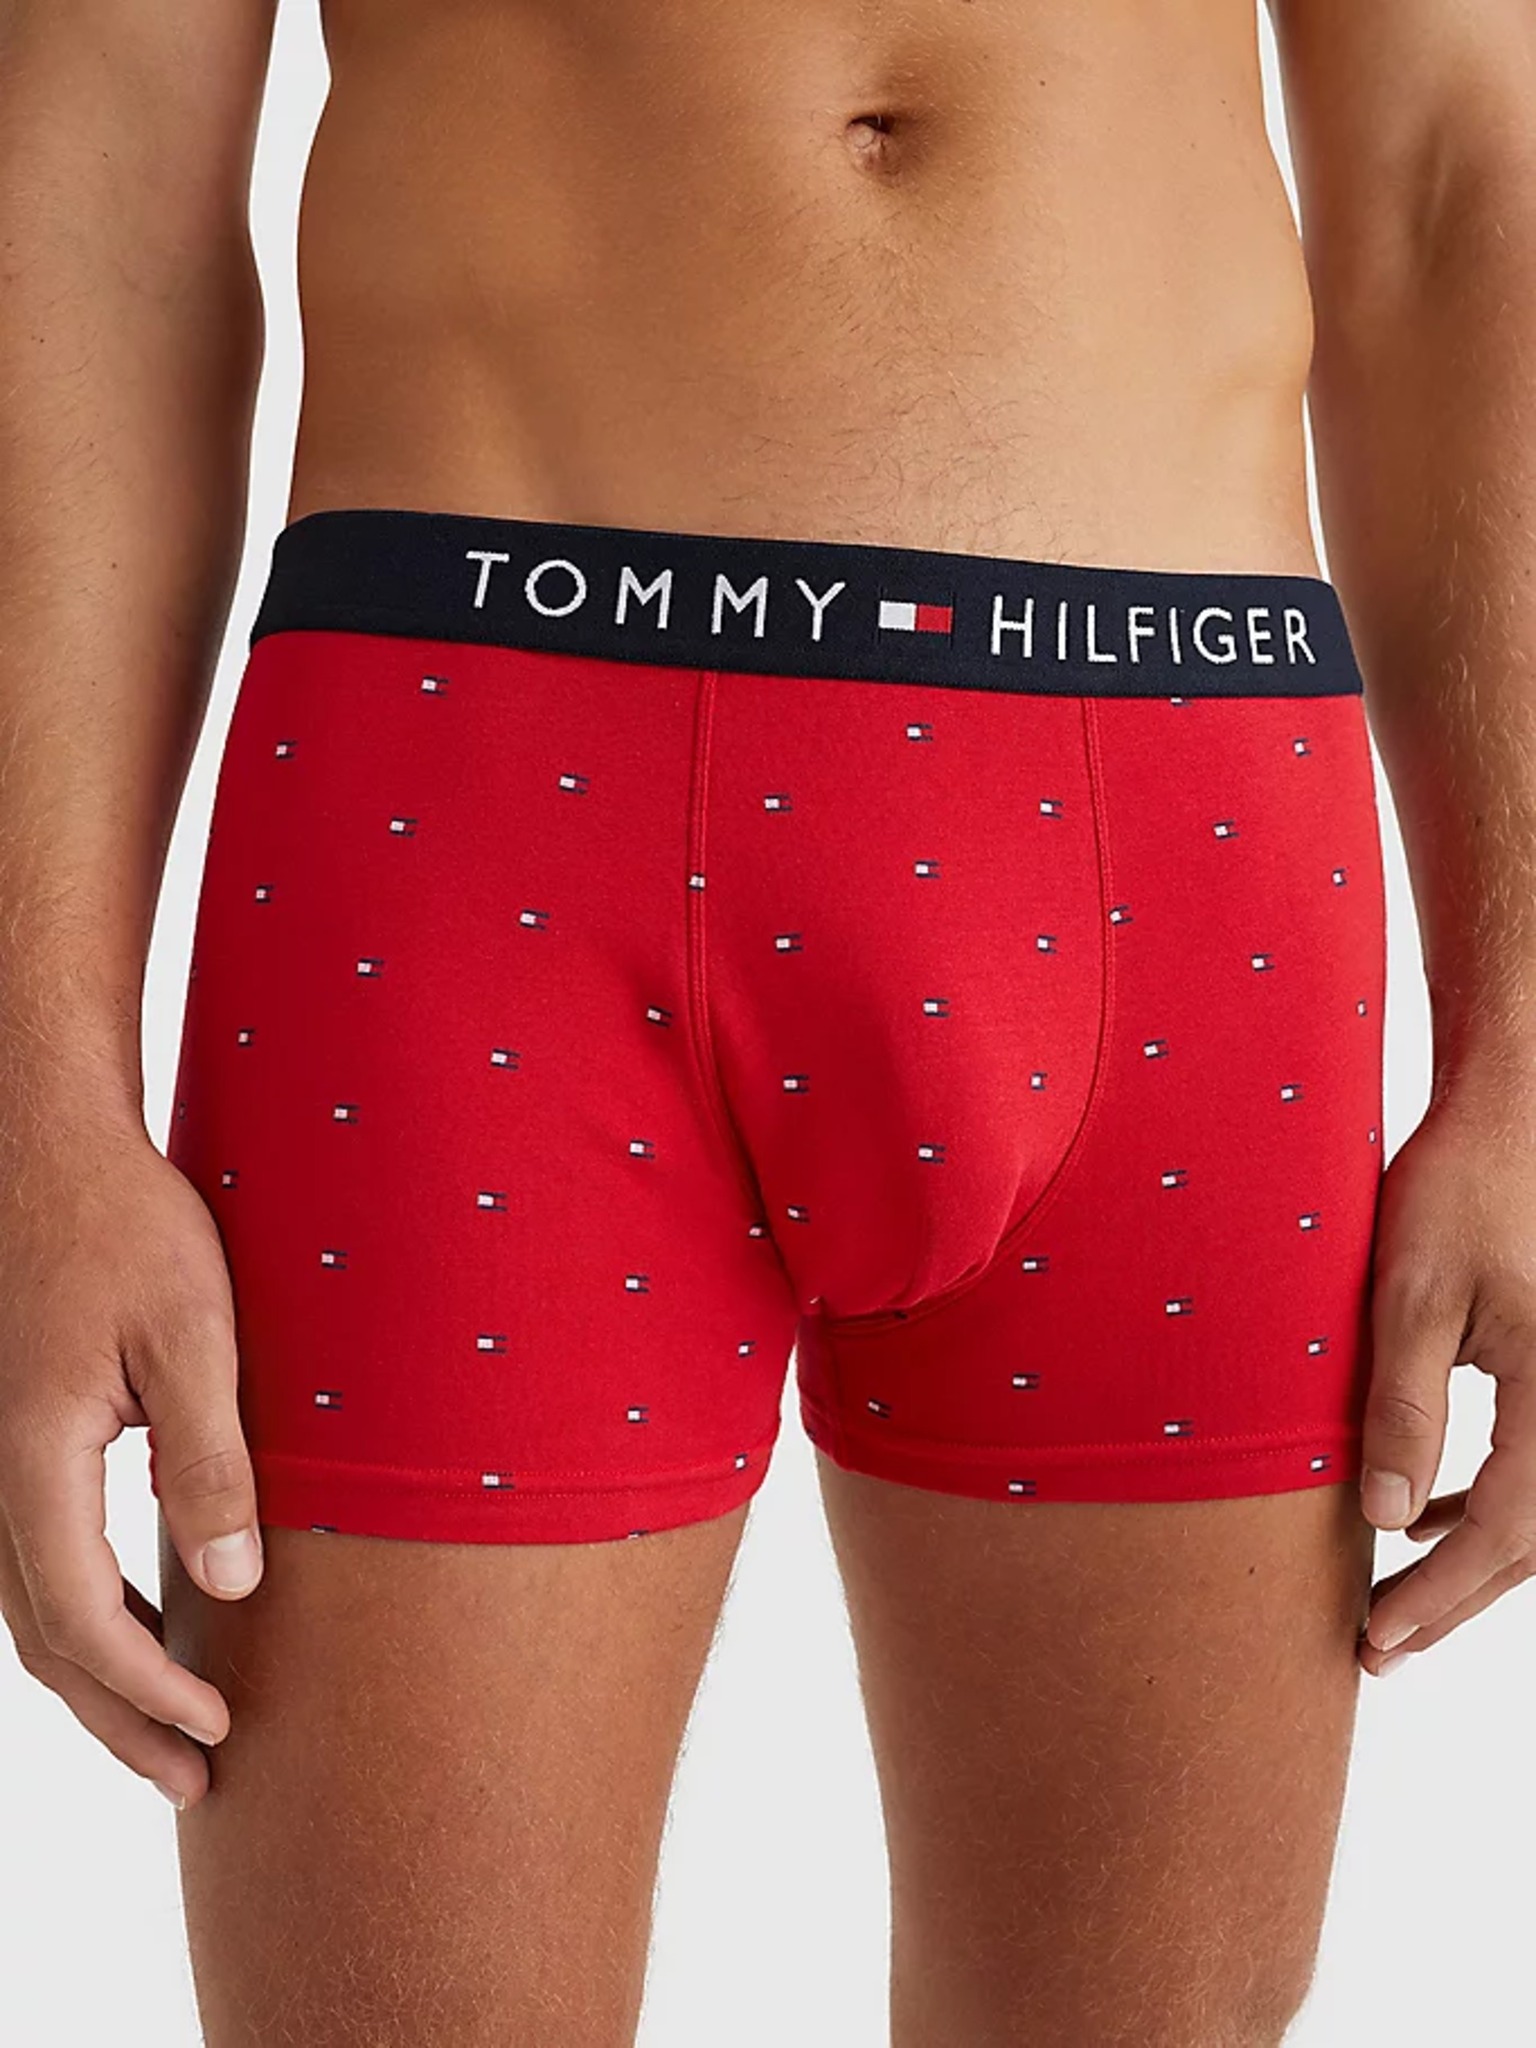 academisch hoorbaar Verwachting Tommy Hilfiger Underwear - Boxer shorts Bibloo.com